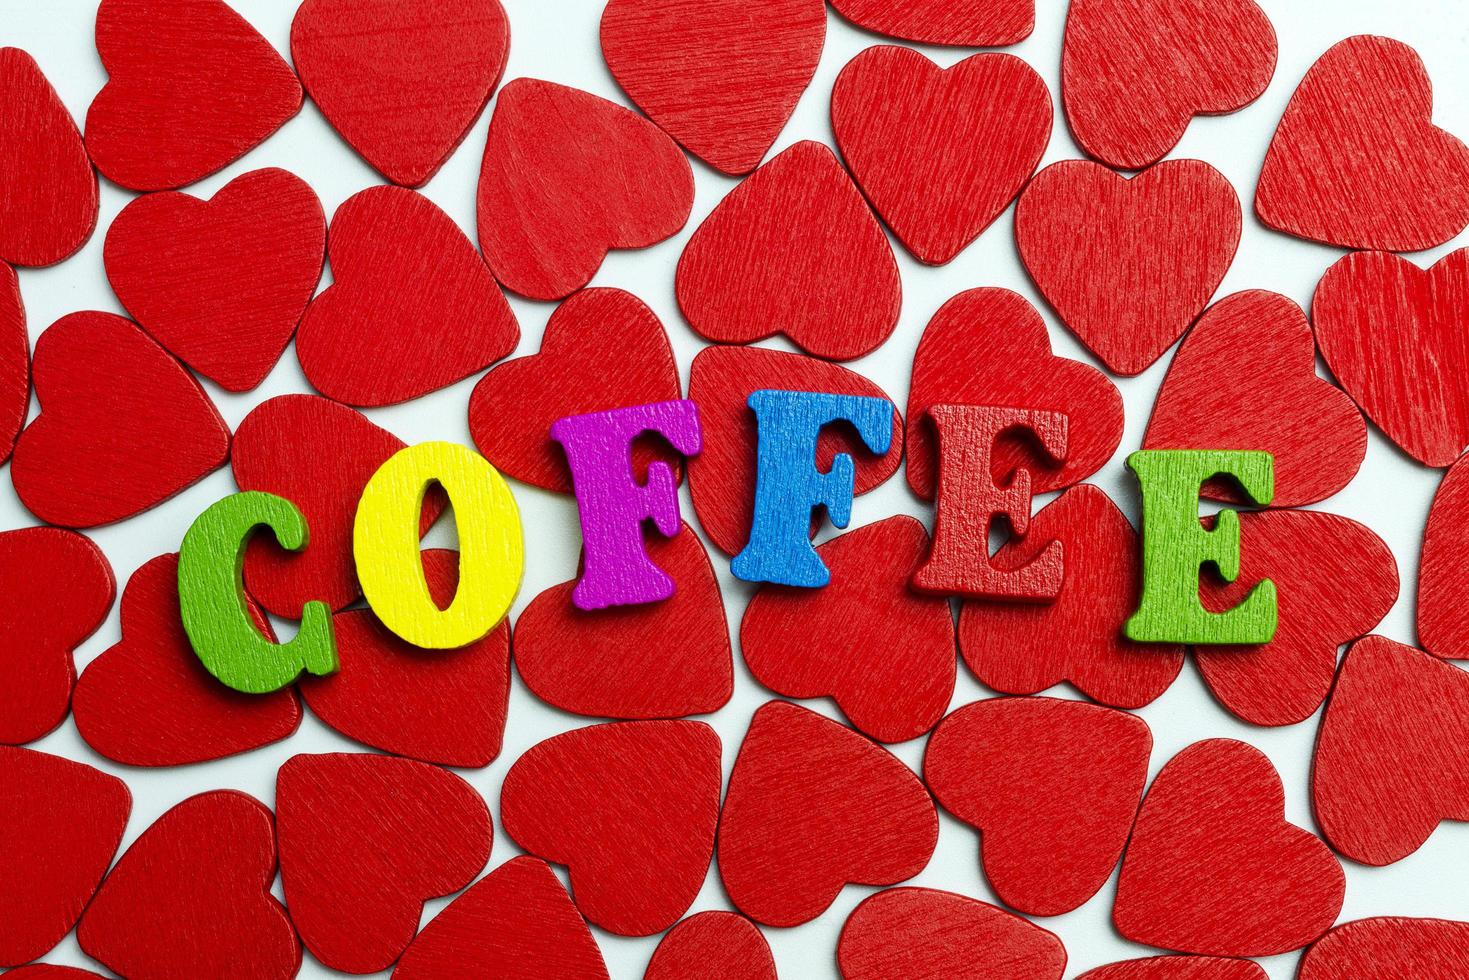 het woord koffie is aangelegd op de harten. foto